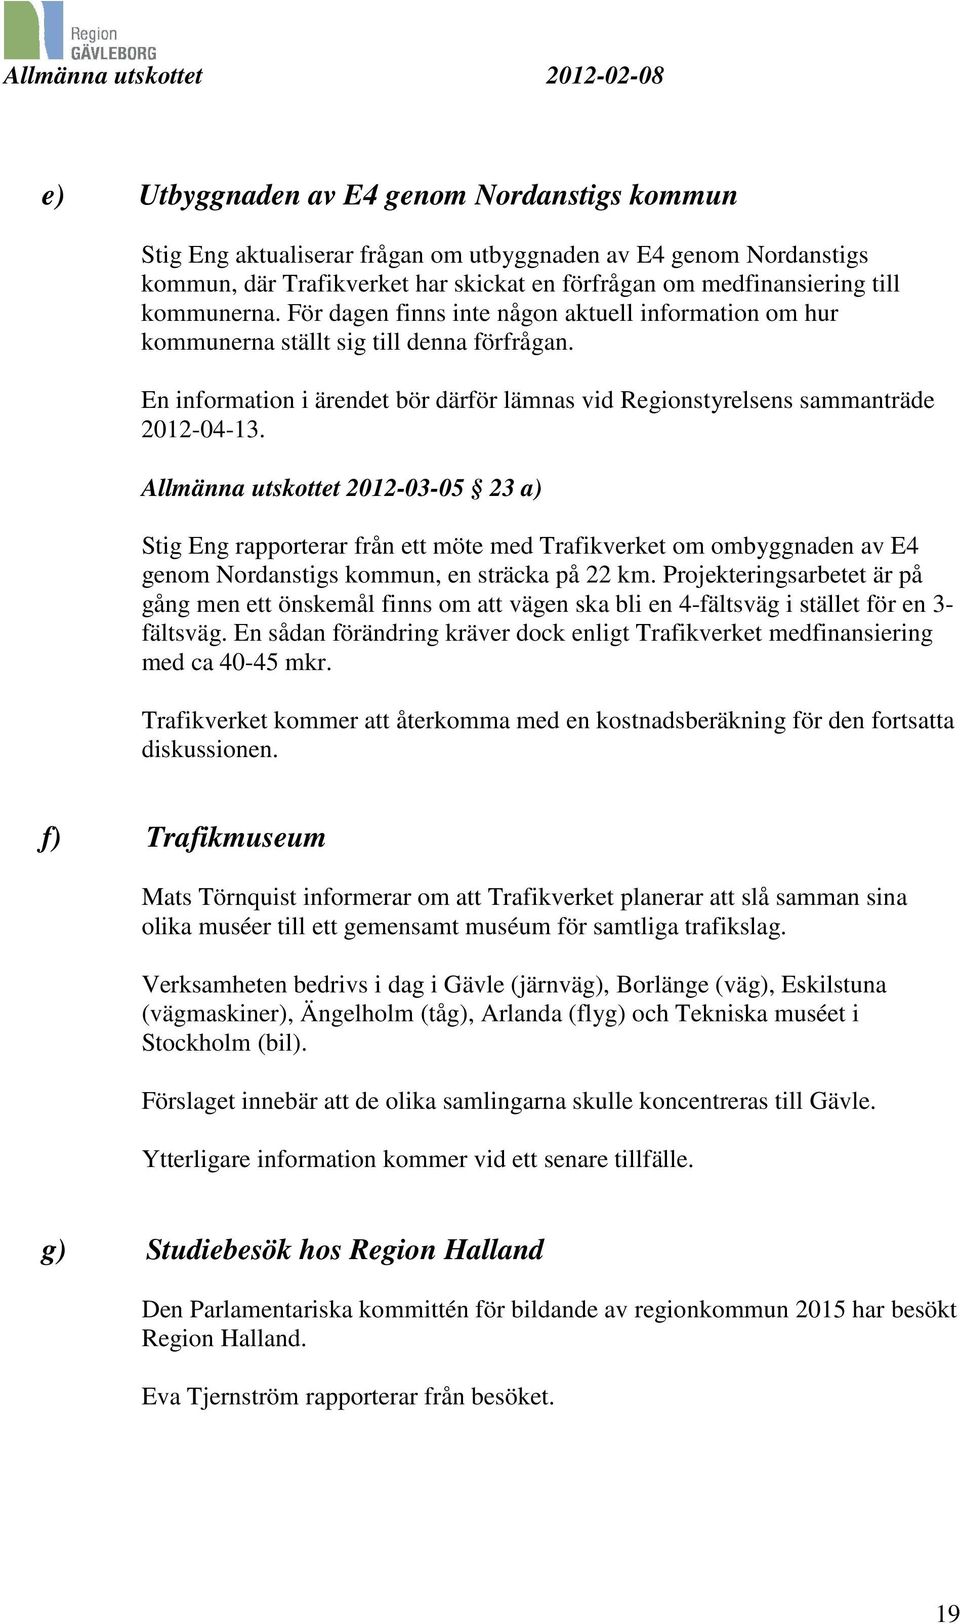 Allmänna utskottet 2012-03-05 23 a) Stig Eng rapporterar från ett möte med Trafikverket om ombyggnaden av E4 genom Nordanstigs kommun, en sträcka på 22 km.